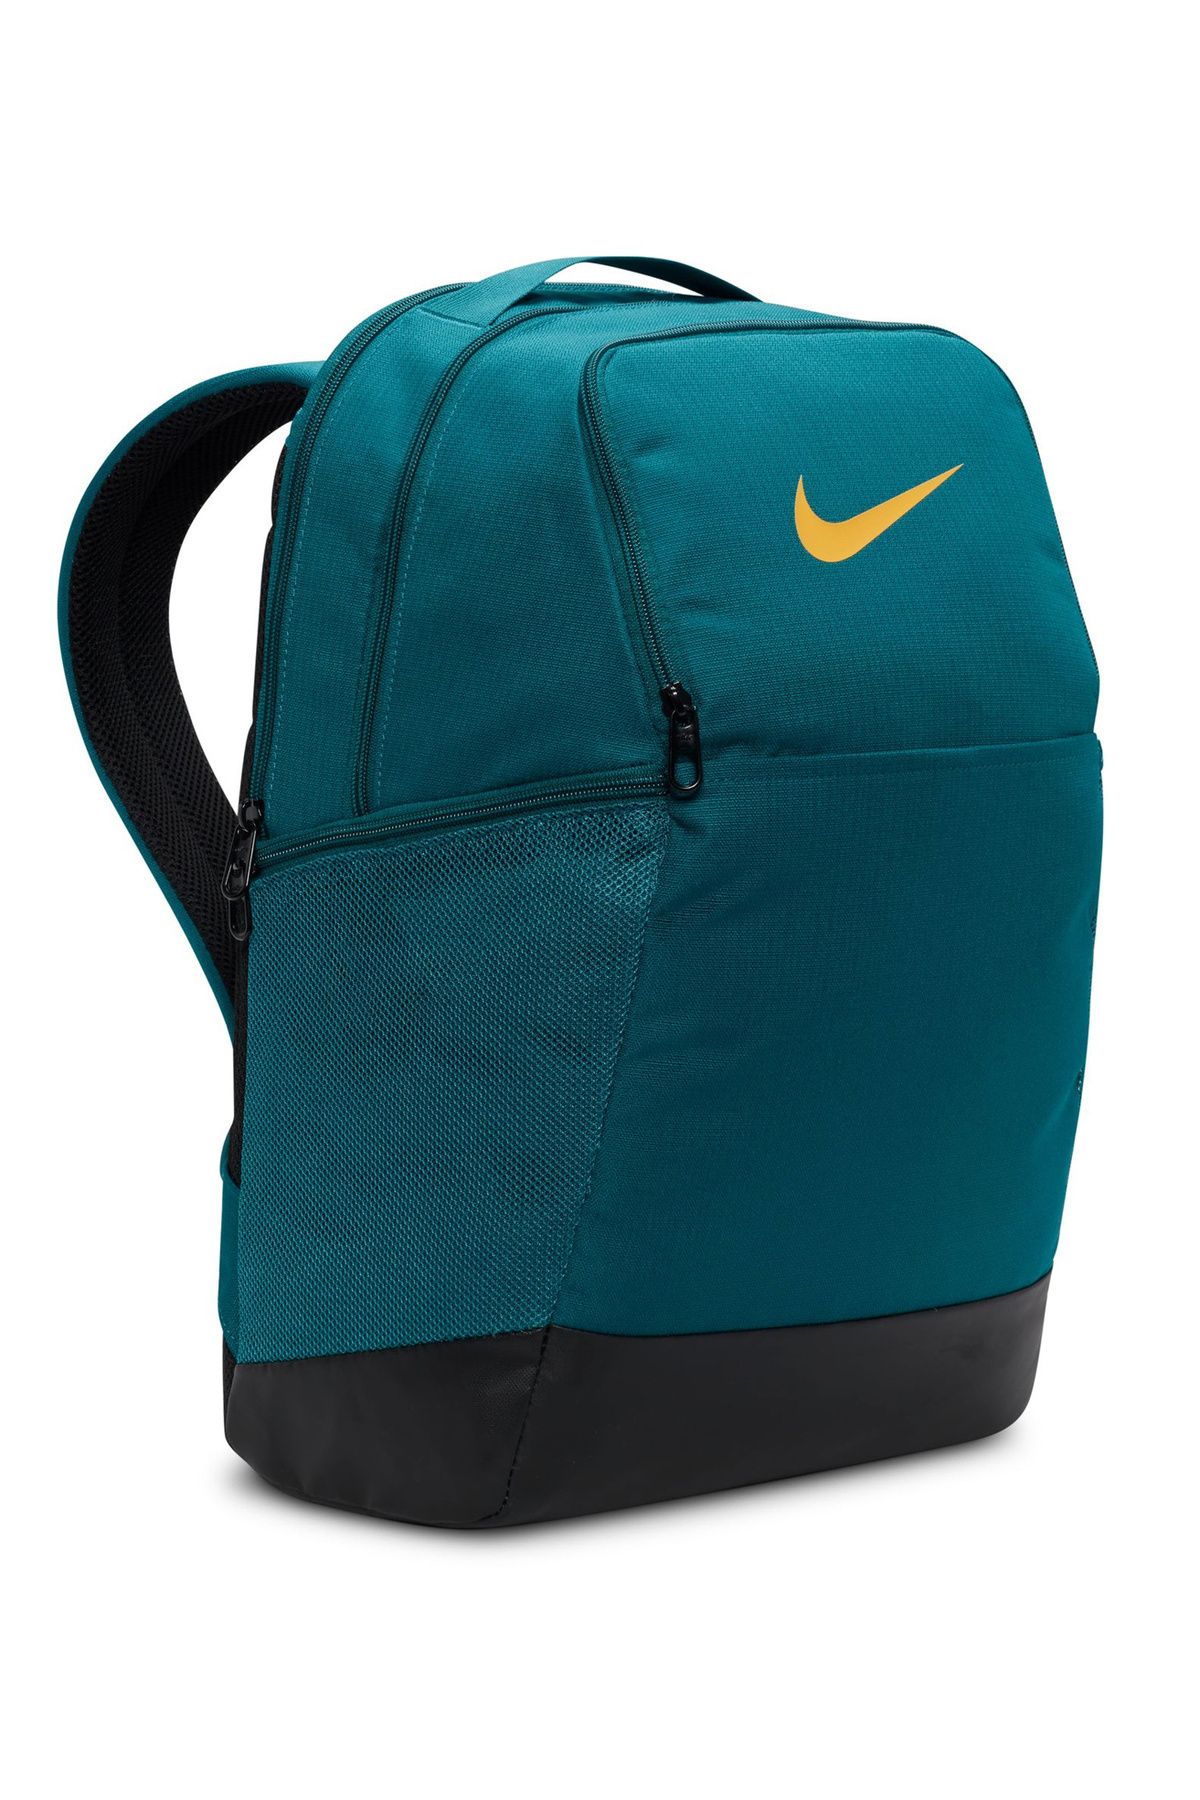 Nike Sırt Çantası Nike Çanta 7709yeşilmavi Laptop Bölmeli 45x30x15 Cm